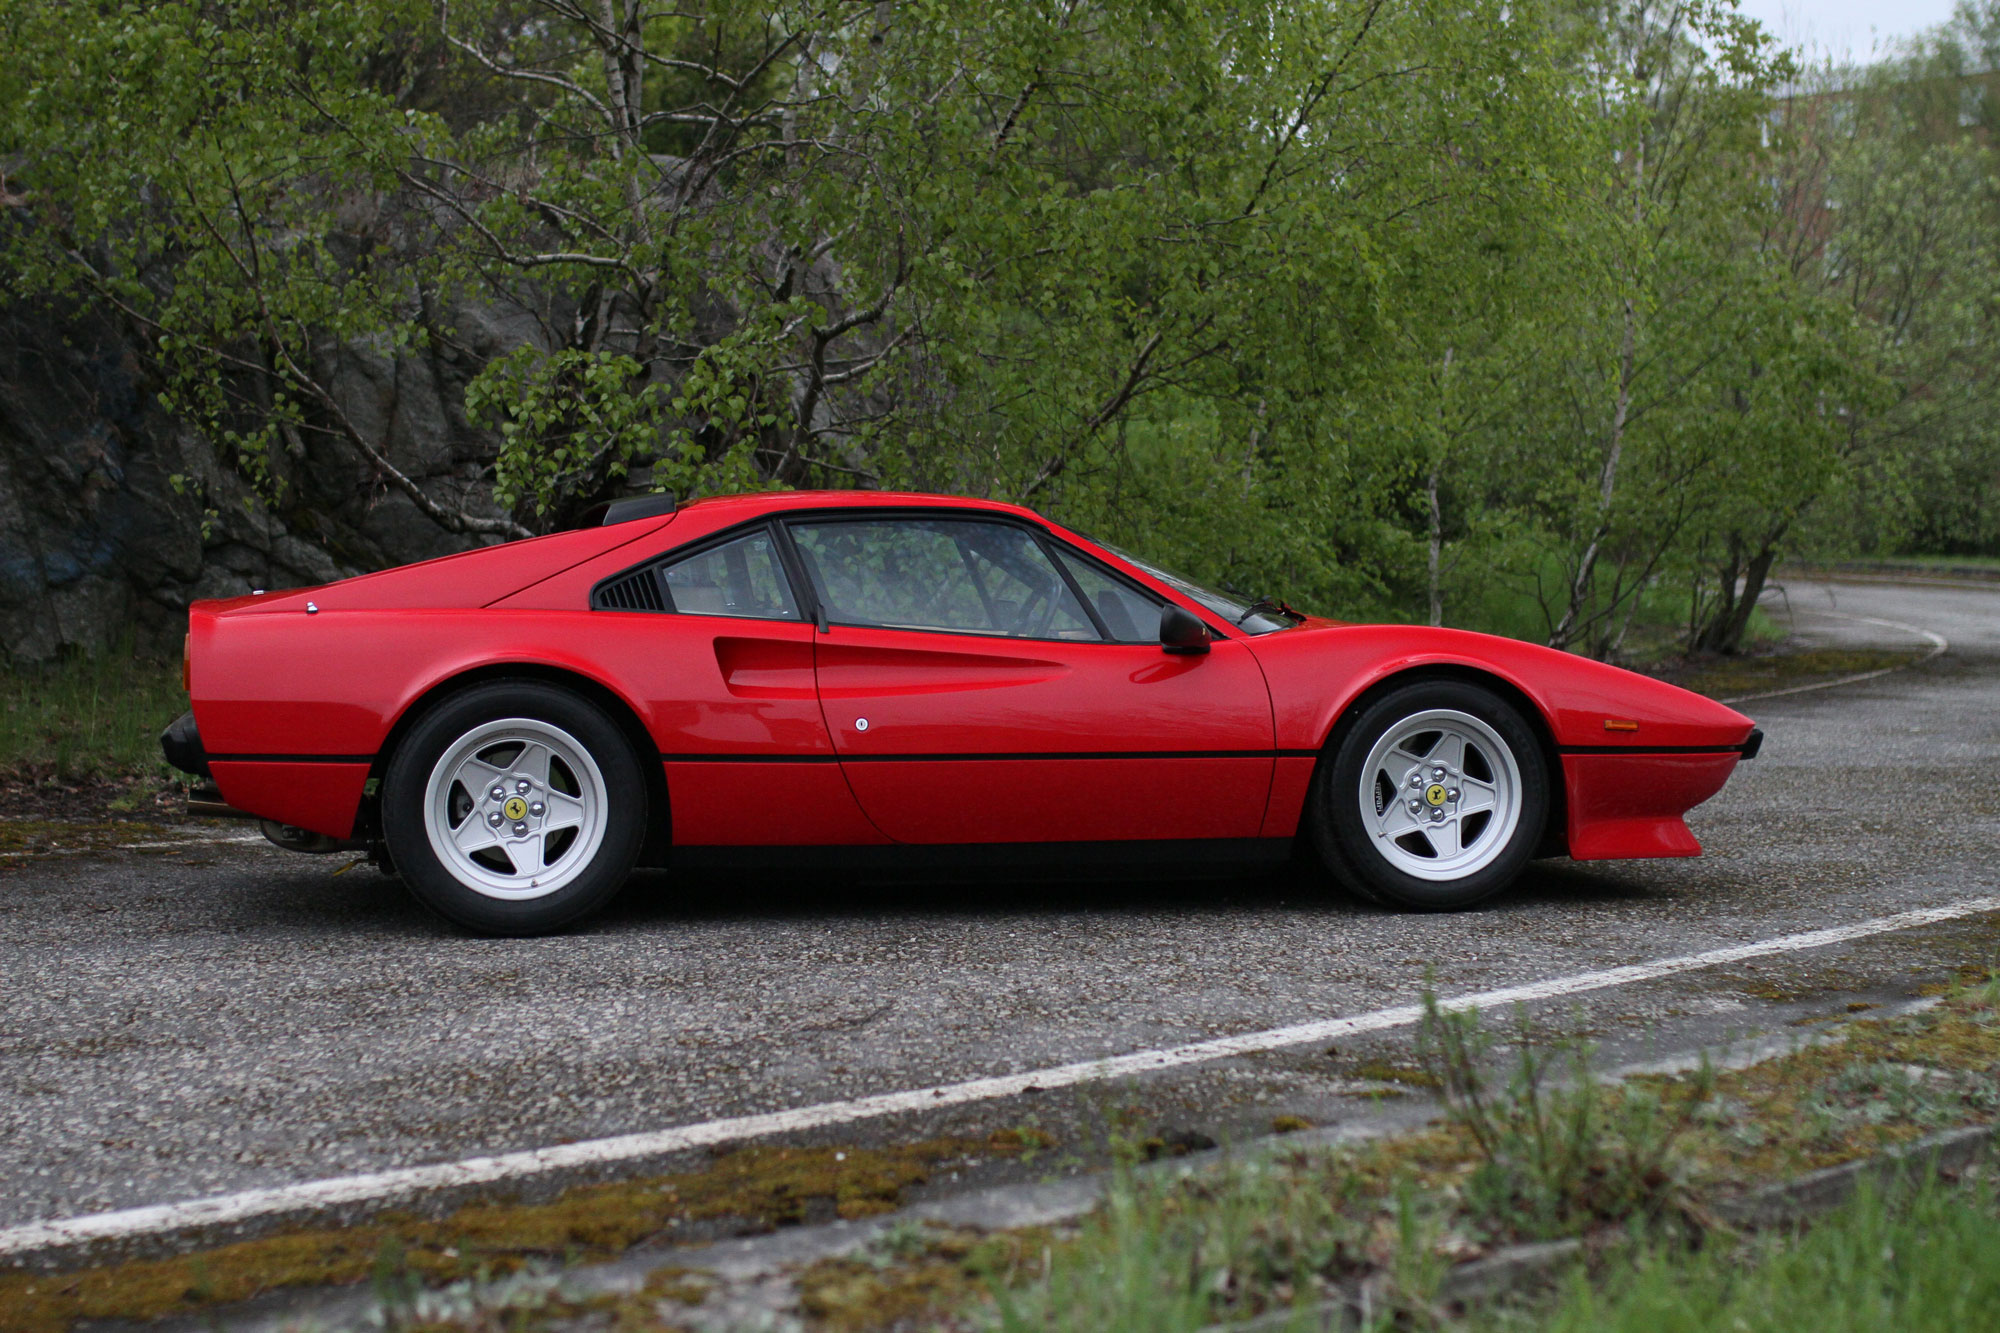 the profile of the iconic red Ferrari 308 GTB QV - 1984